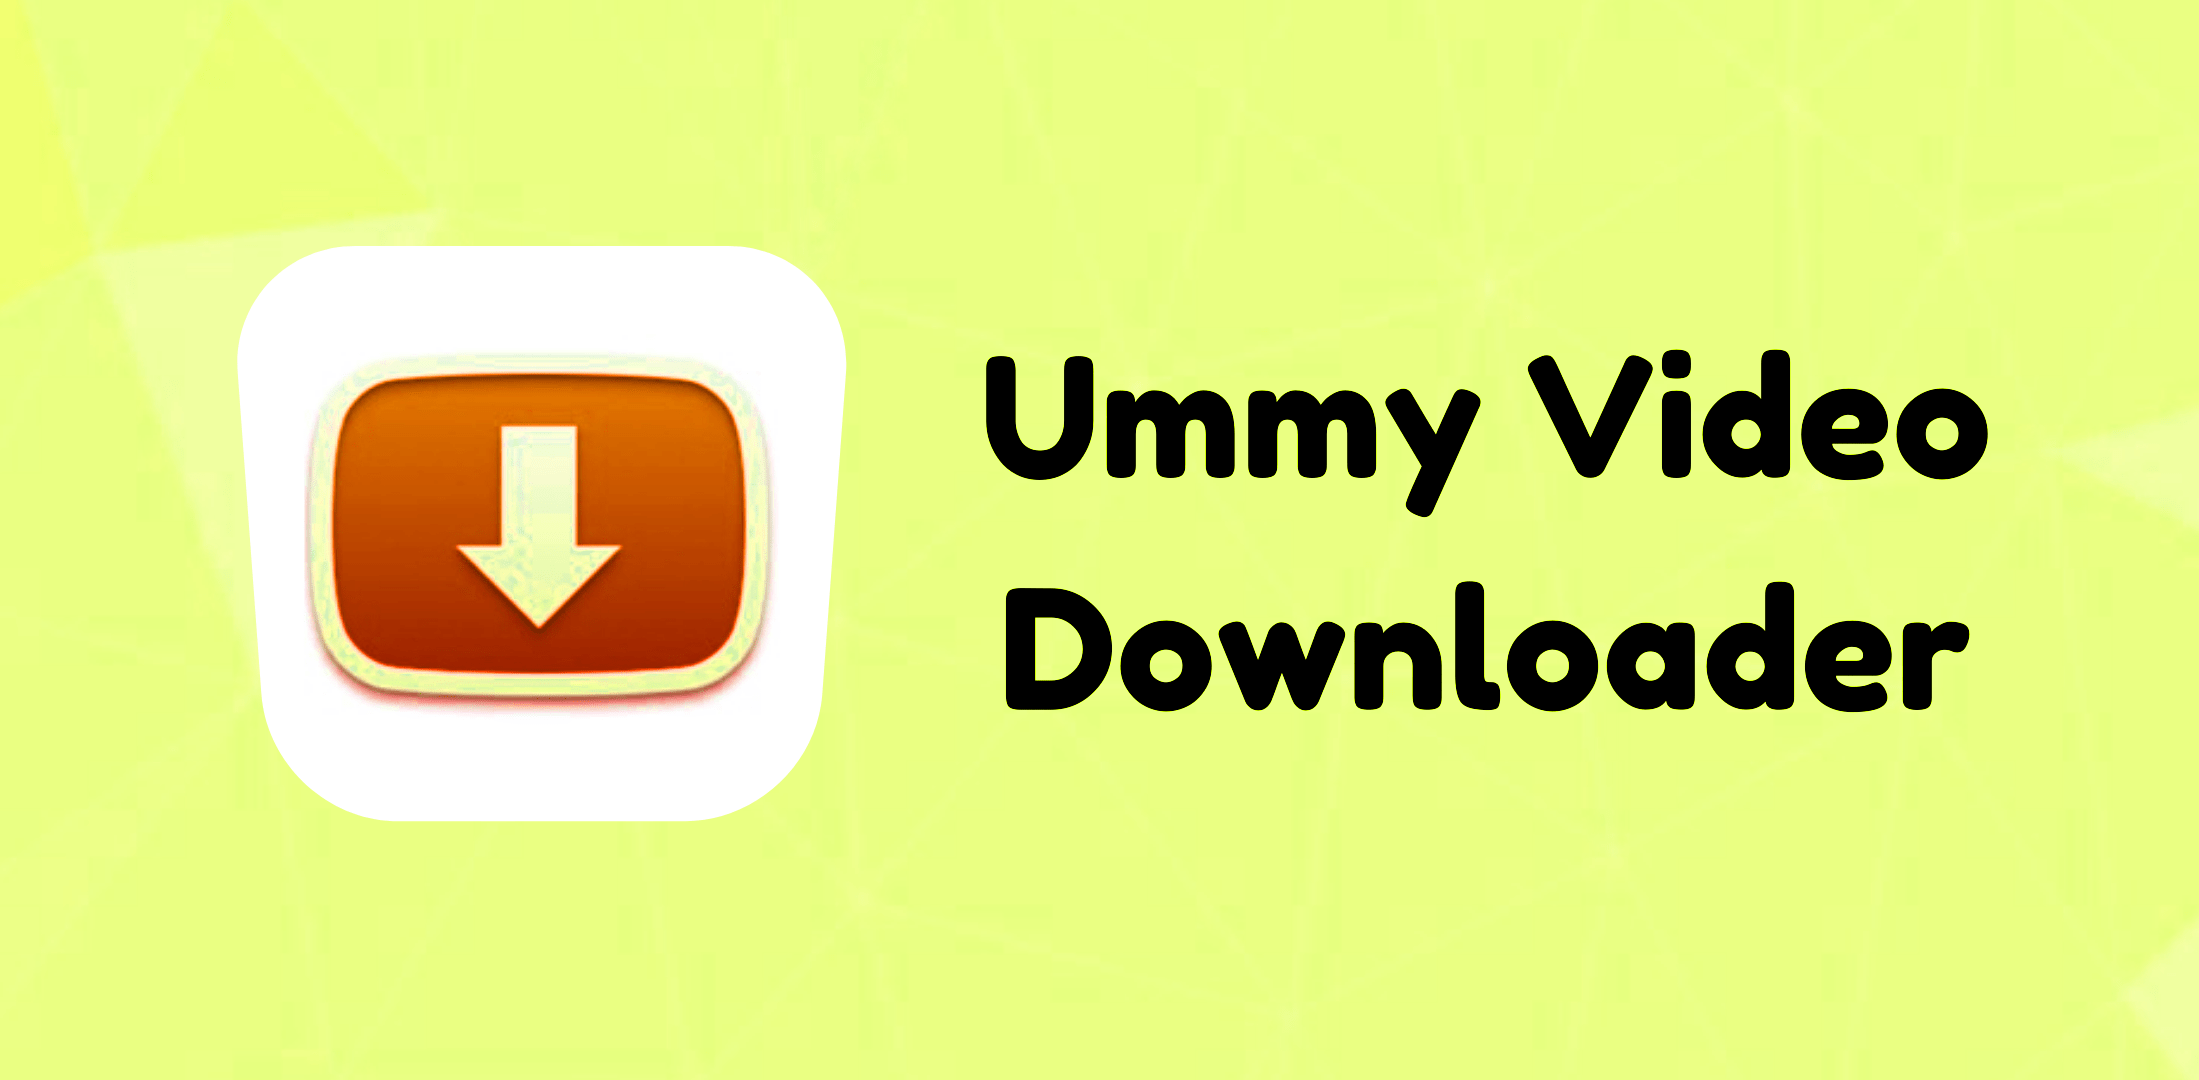 Ummy Video Downloader Logo Pic